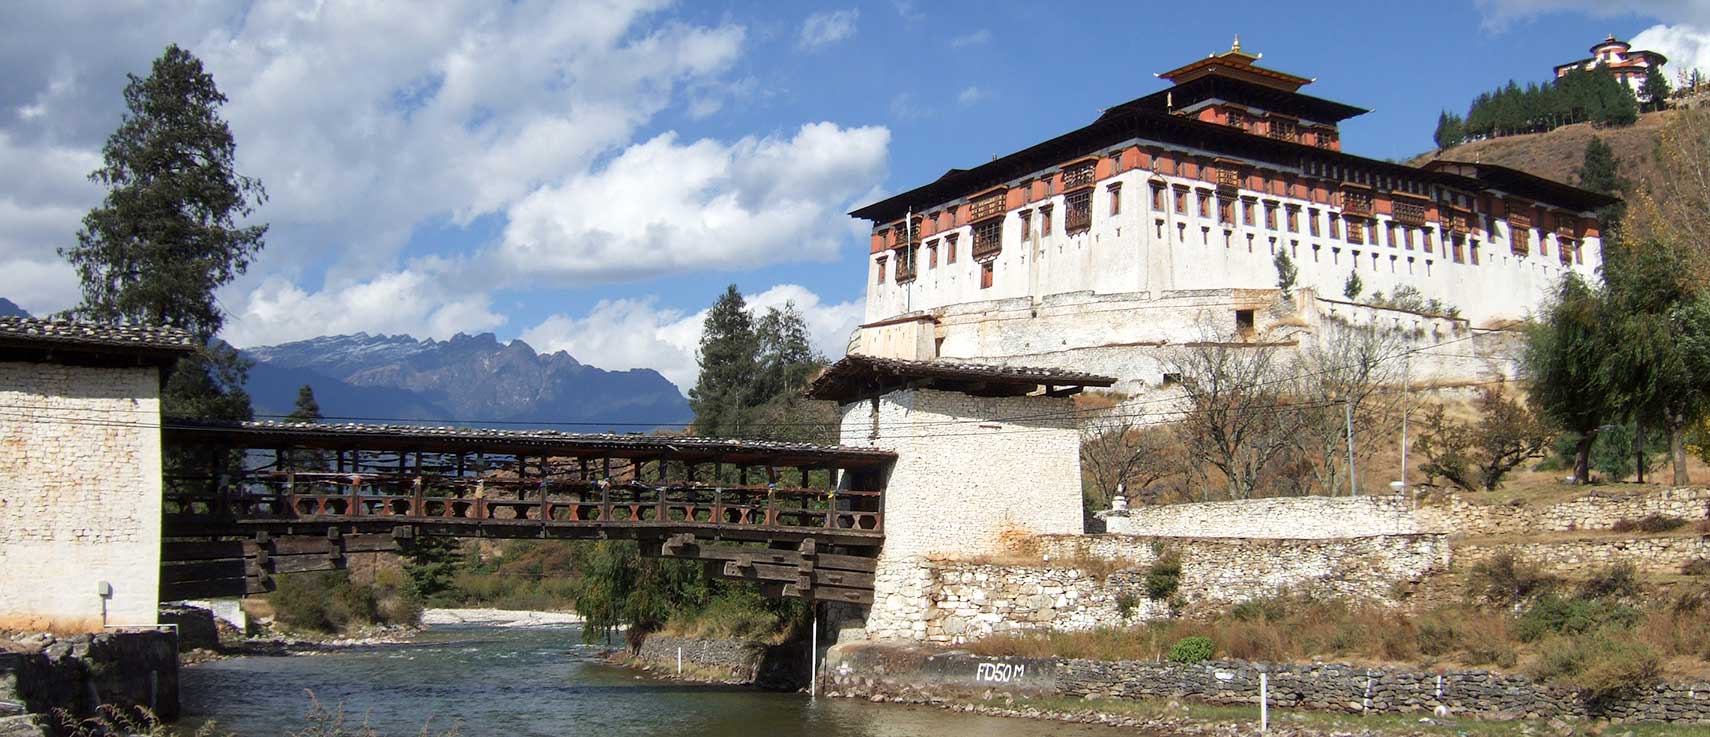 Rinpung Dzong monastery, Paro